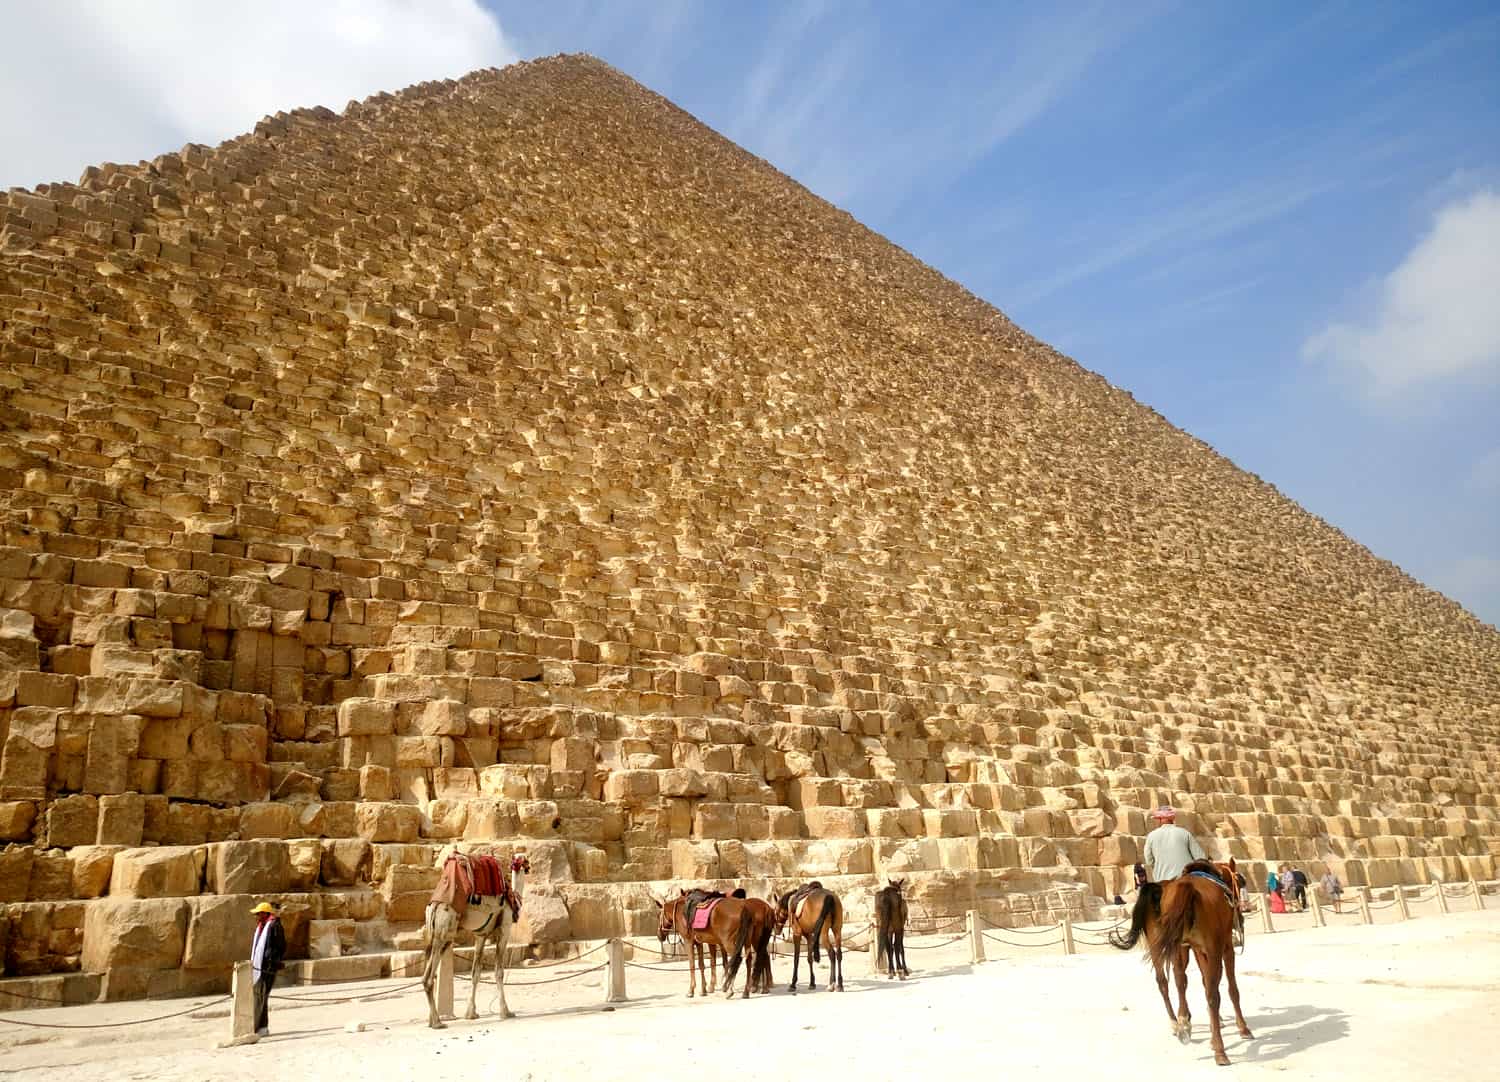 tour inside pyramids egypt